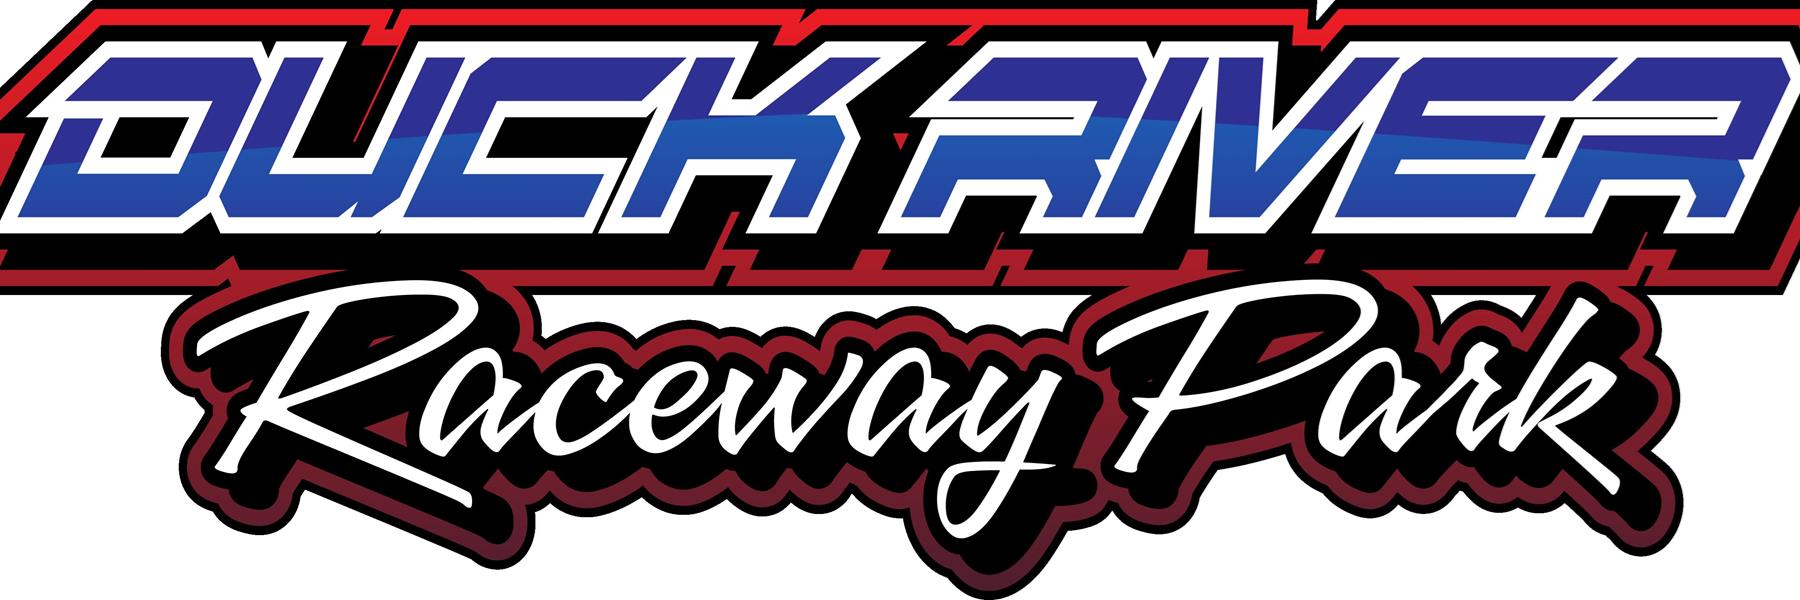 10/8/2022 - Duck River Raceway Park